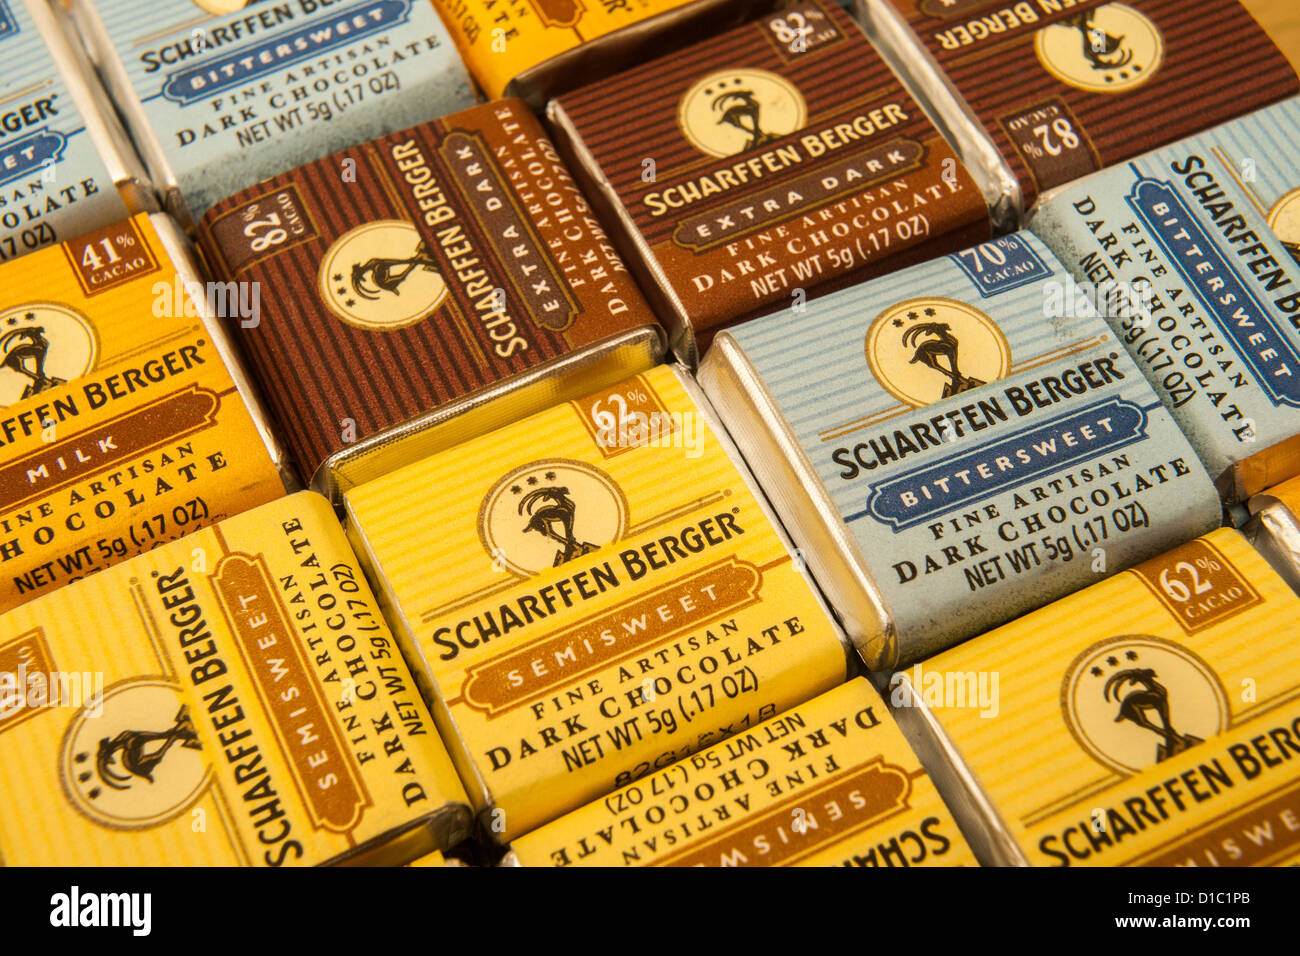 Scharffen Berger filiale Hershey fait la promotion de leurs produits au  chocolat Photo Stock - Alamy